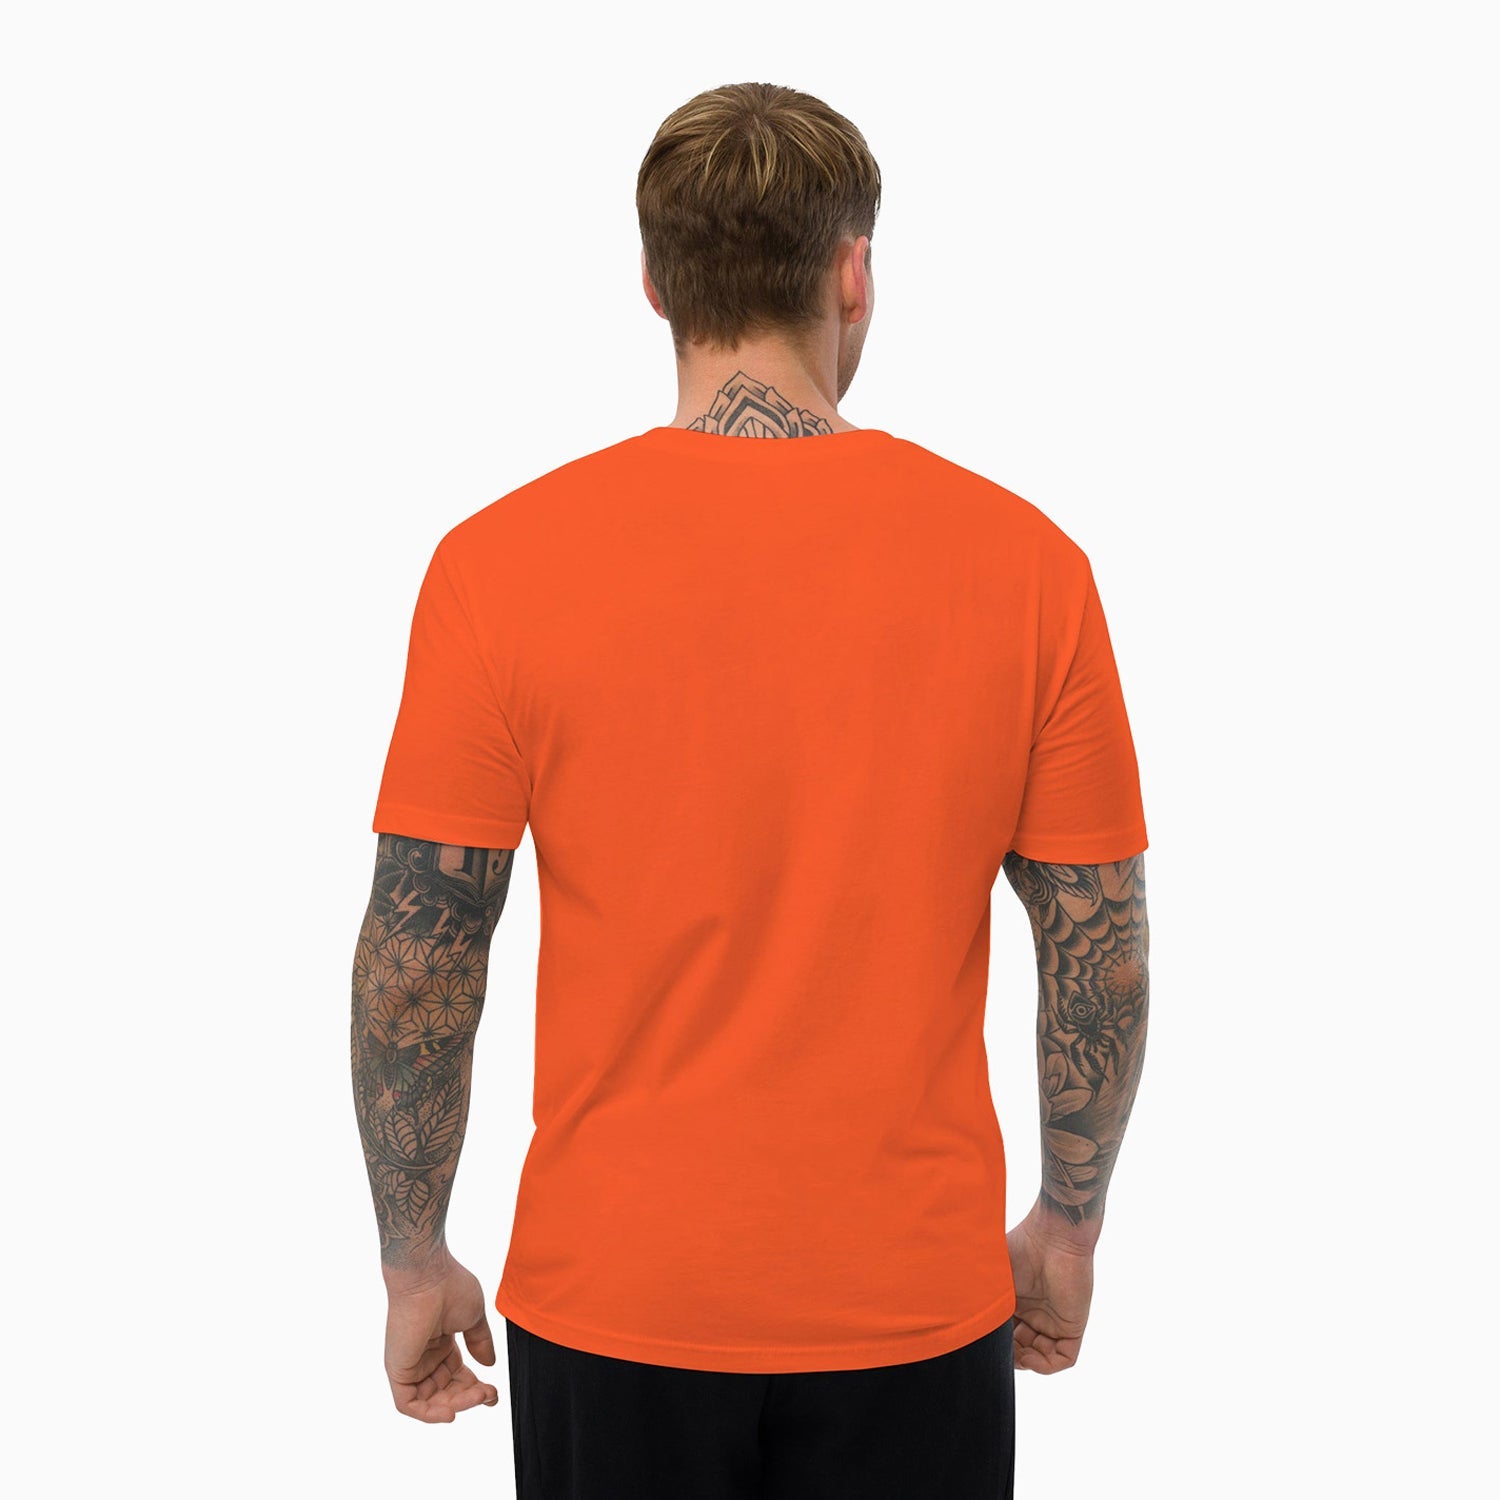 basic-design-printed-crew-neck-orange-t-shirt-for-men-st105-852